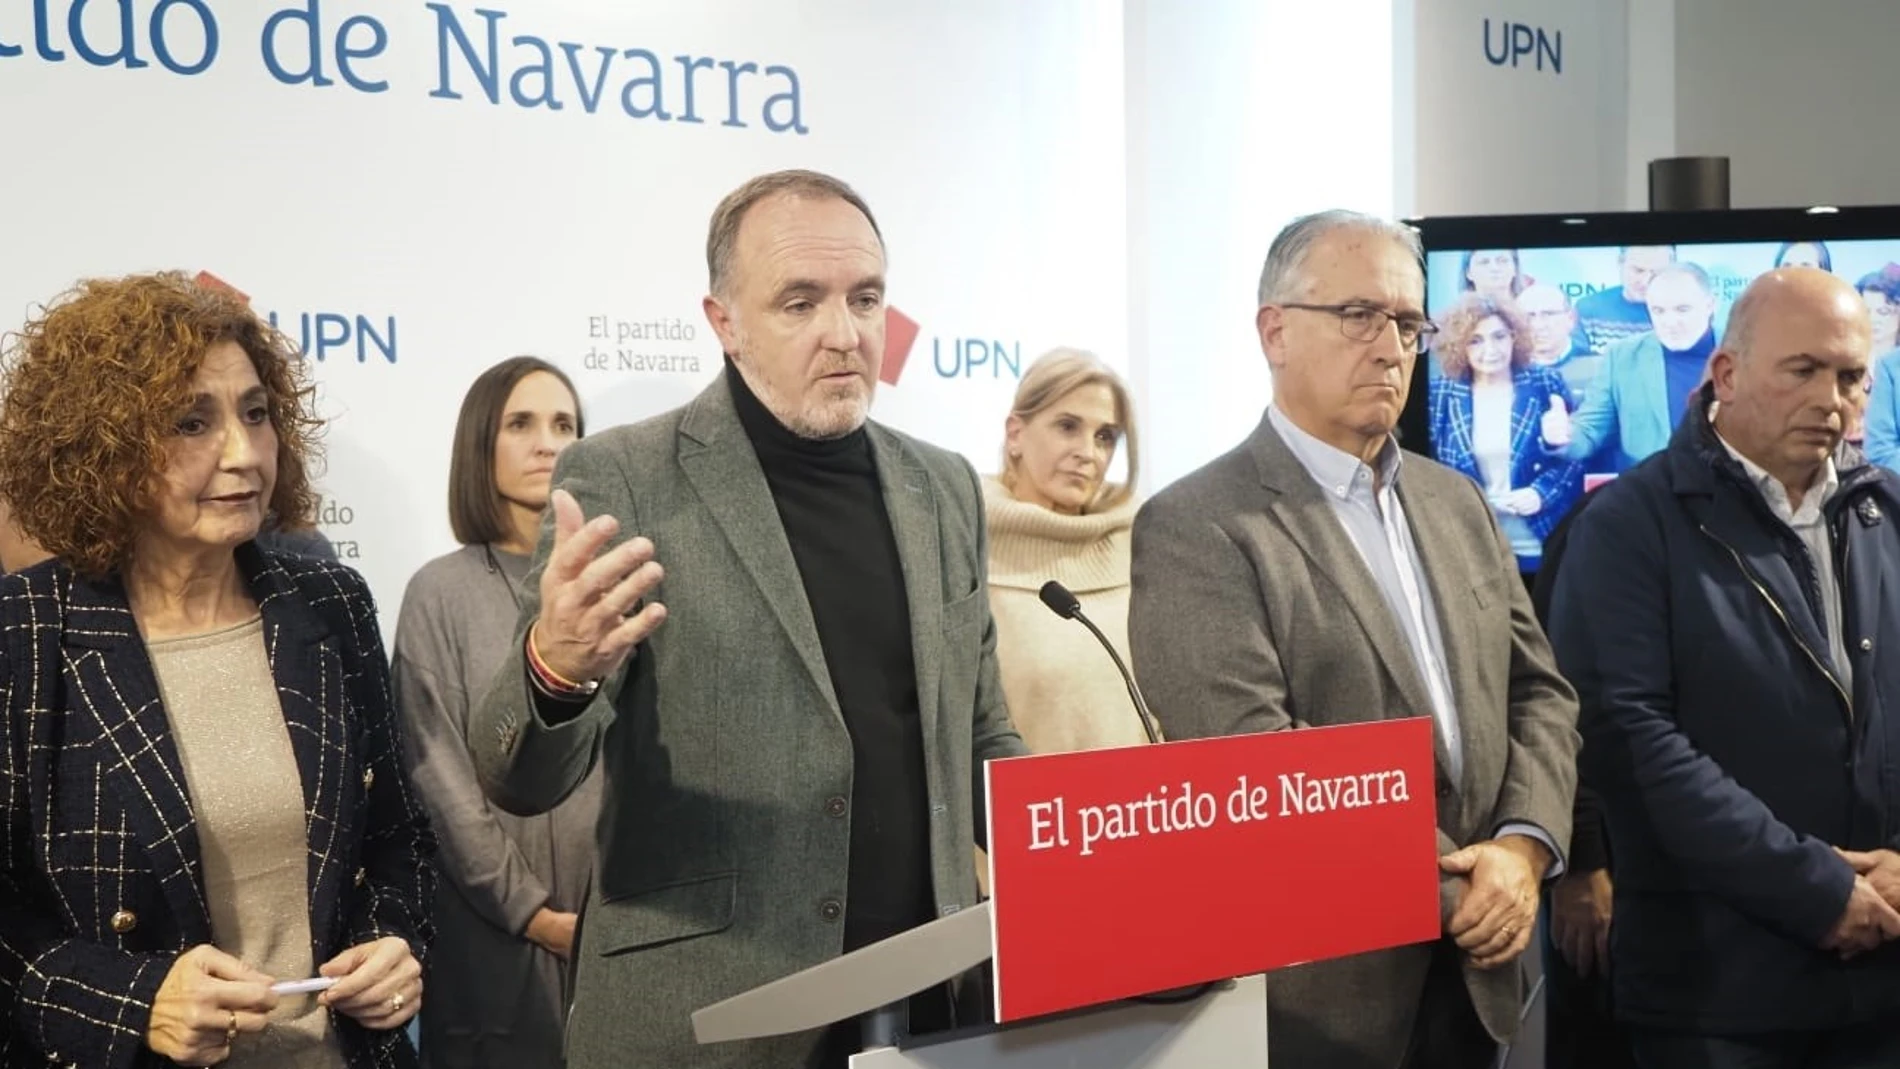 El presidente de UPN, Javier Esparza, durante la rueda de prensa junto a los miembros de la Ejecutiva del partidoEDUARDO SANZ - EUROPA PRESS12/12/2022